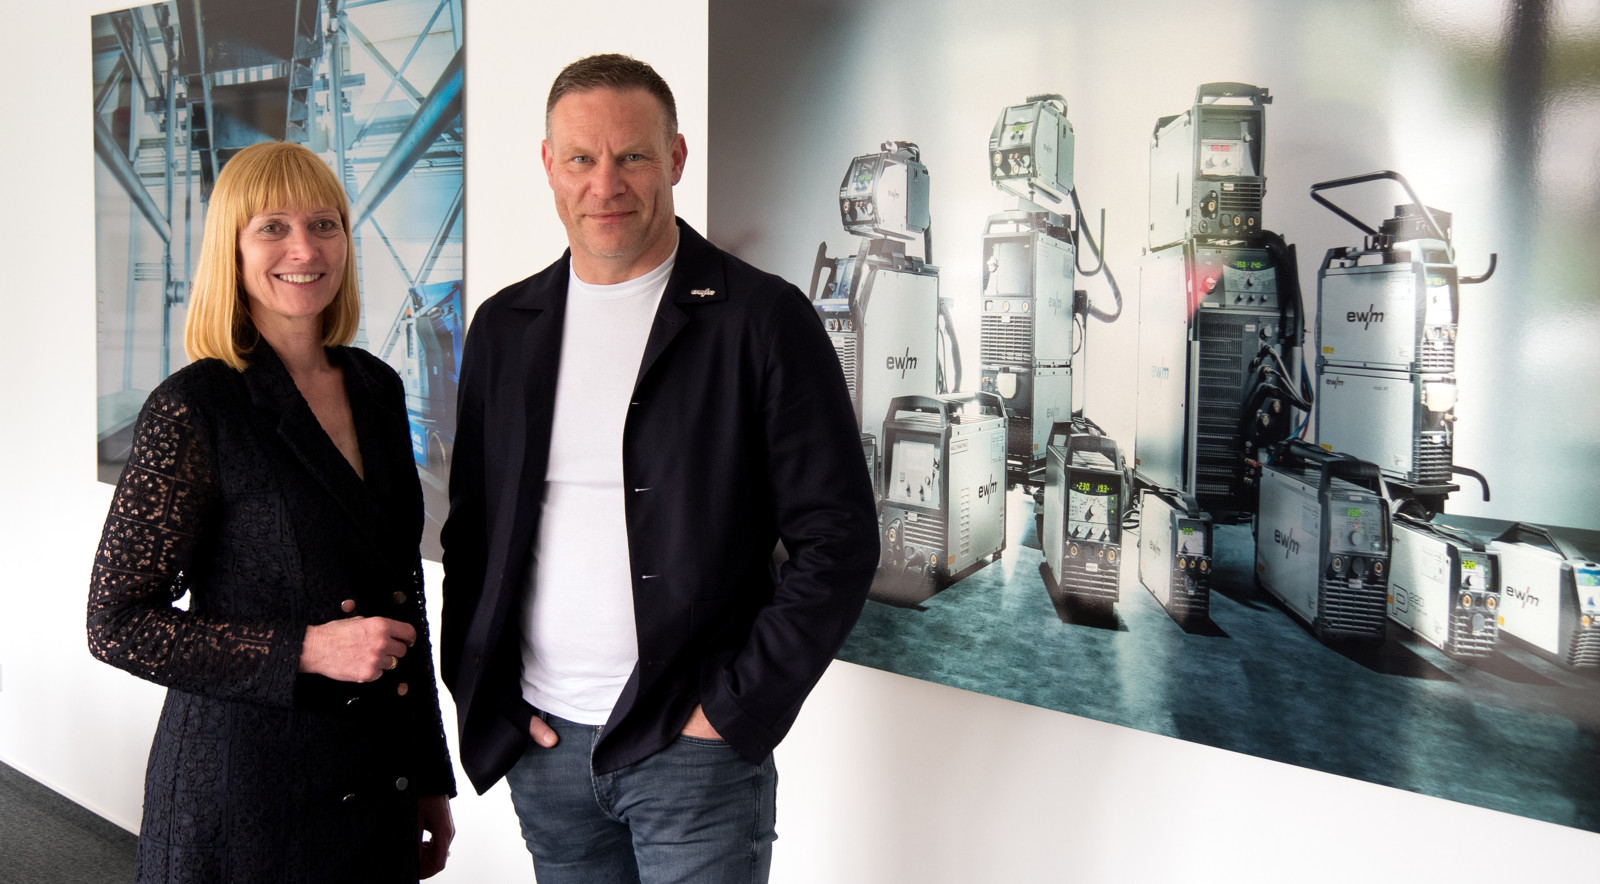 Zum 1. Juni wird die EWM AG zur EWM GmbH. Susanne Szczesny-Oßing (CEO) und Frank Bartels (CTO) bilden die neue Geschäftsführung.